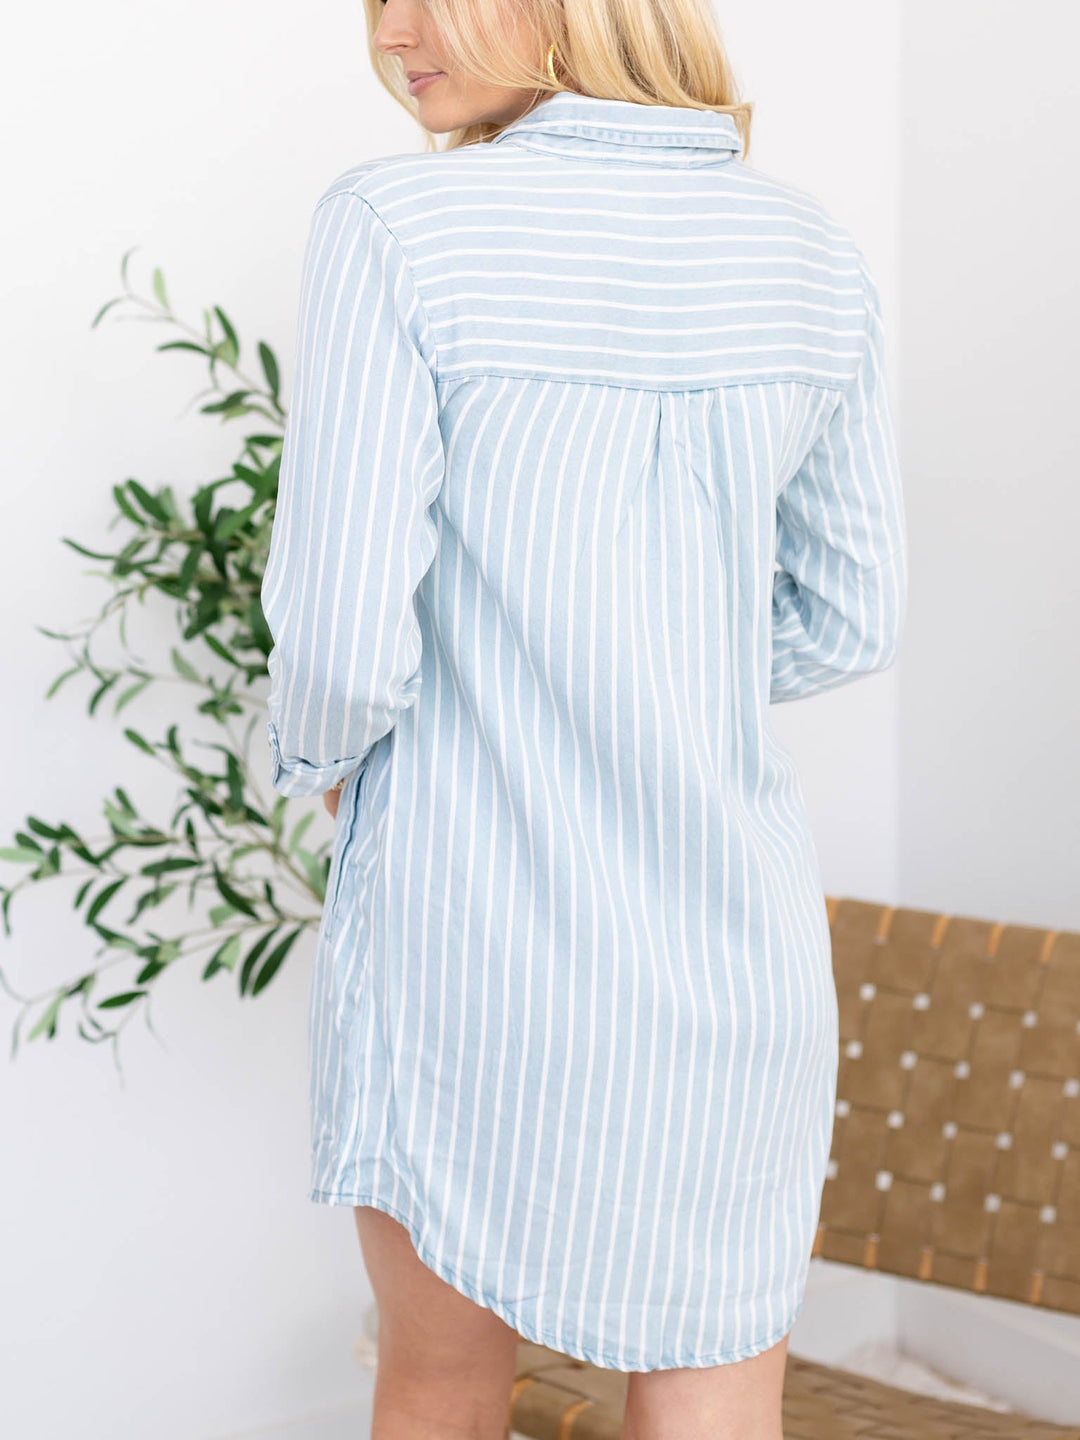 Striped Tab Sleeve Mini Shirt DressDress